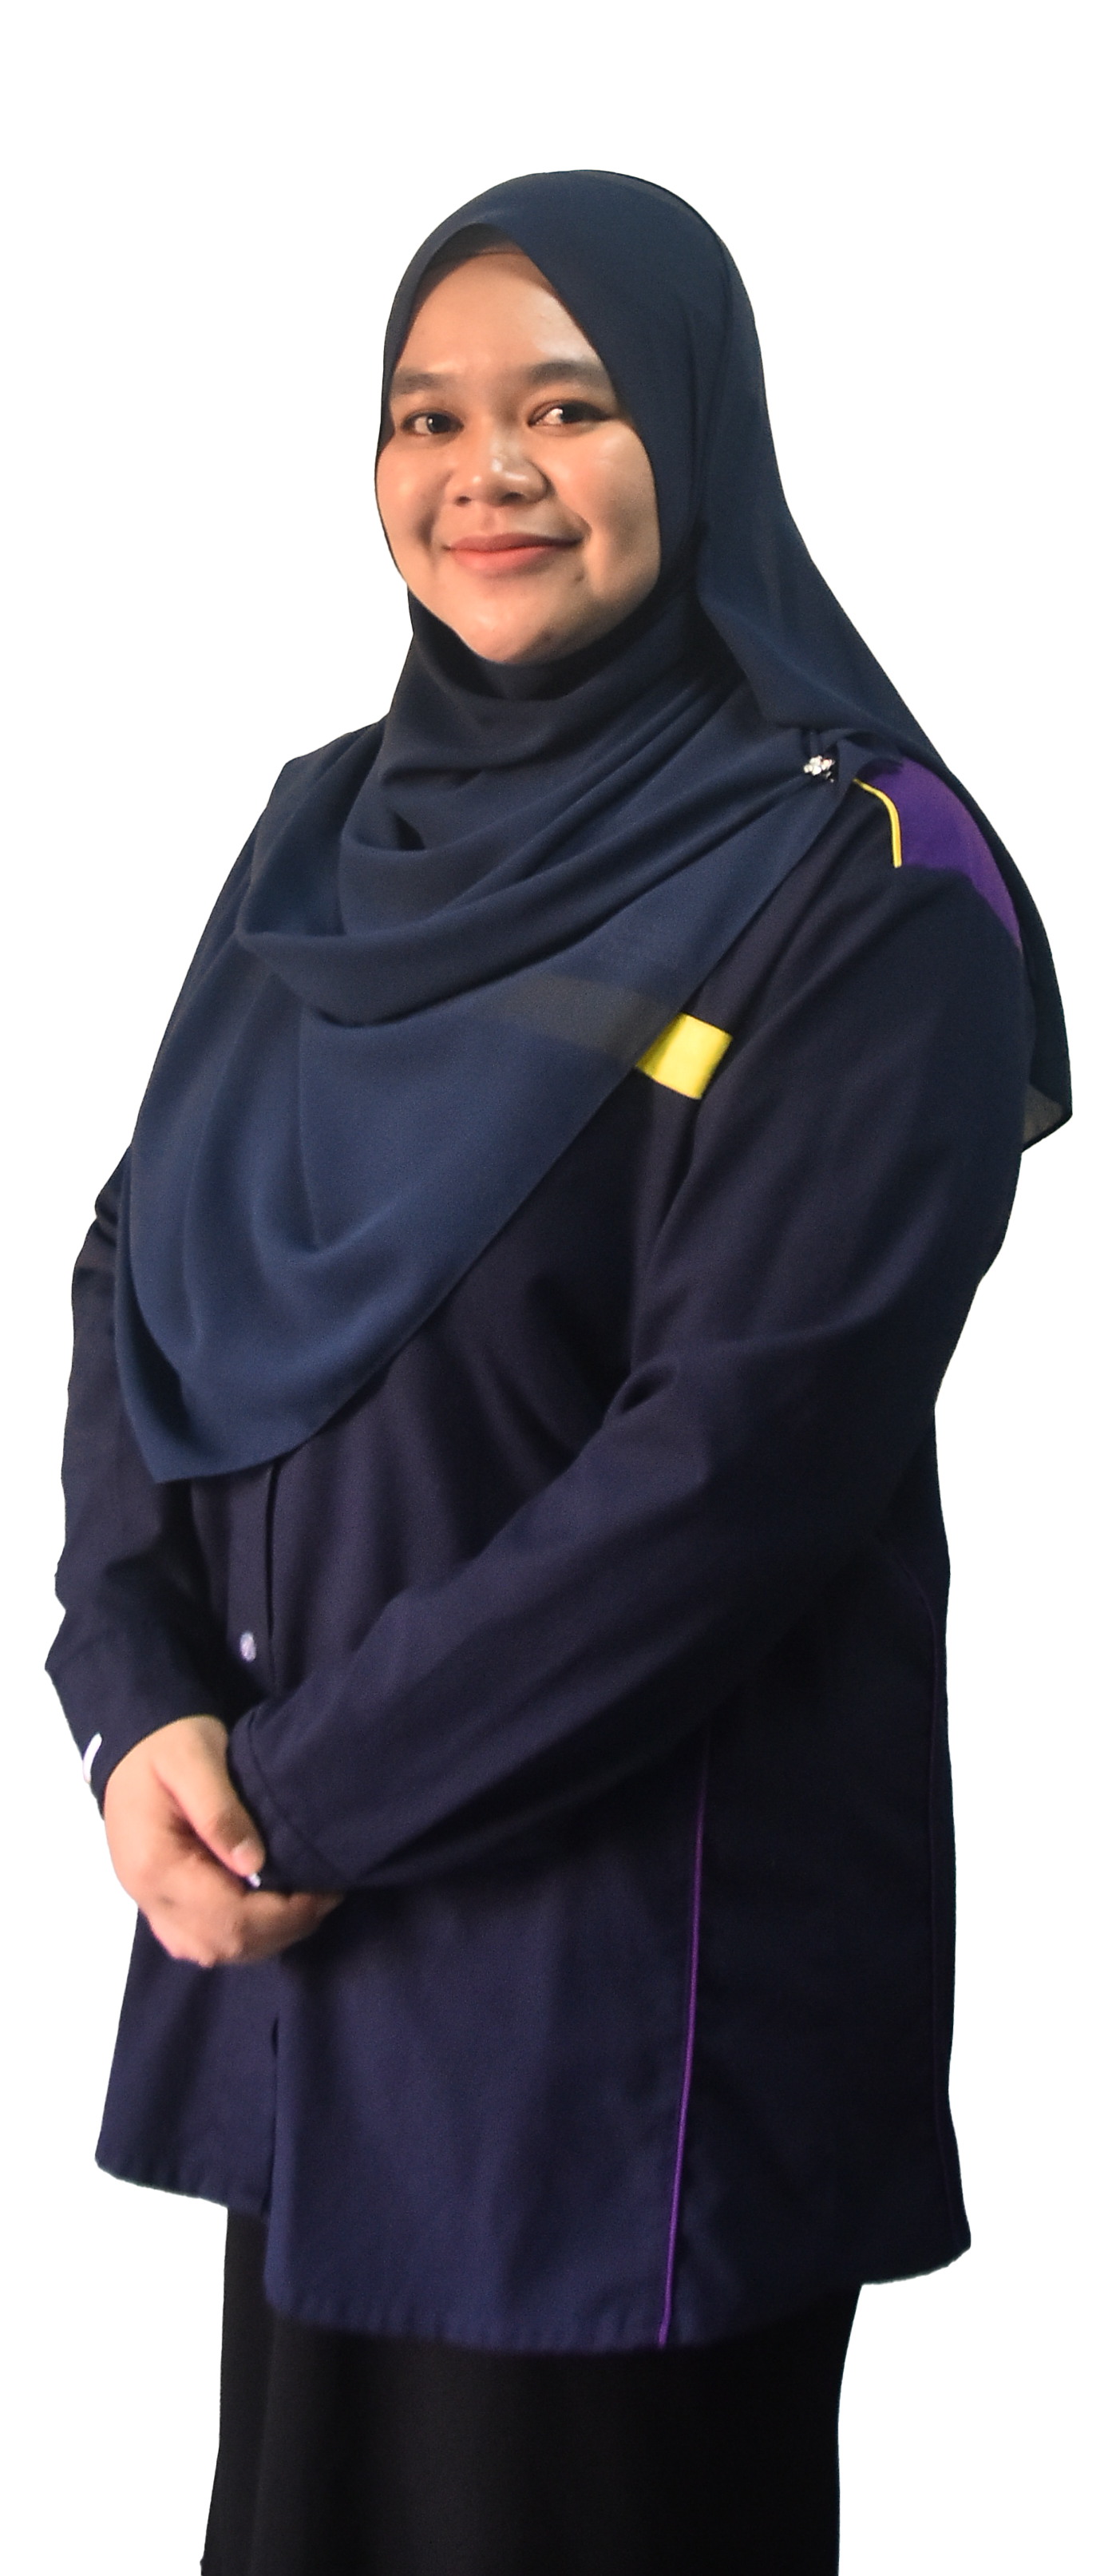 07. Aisyatul Afiqah Binti Salim